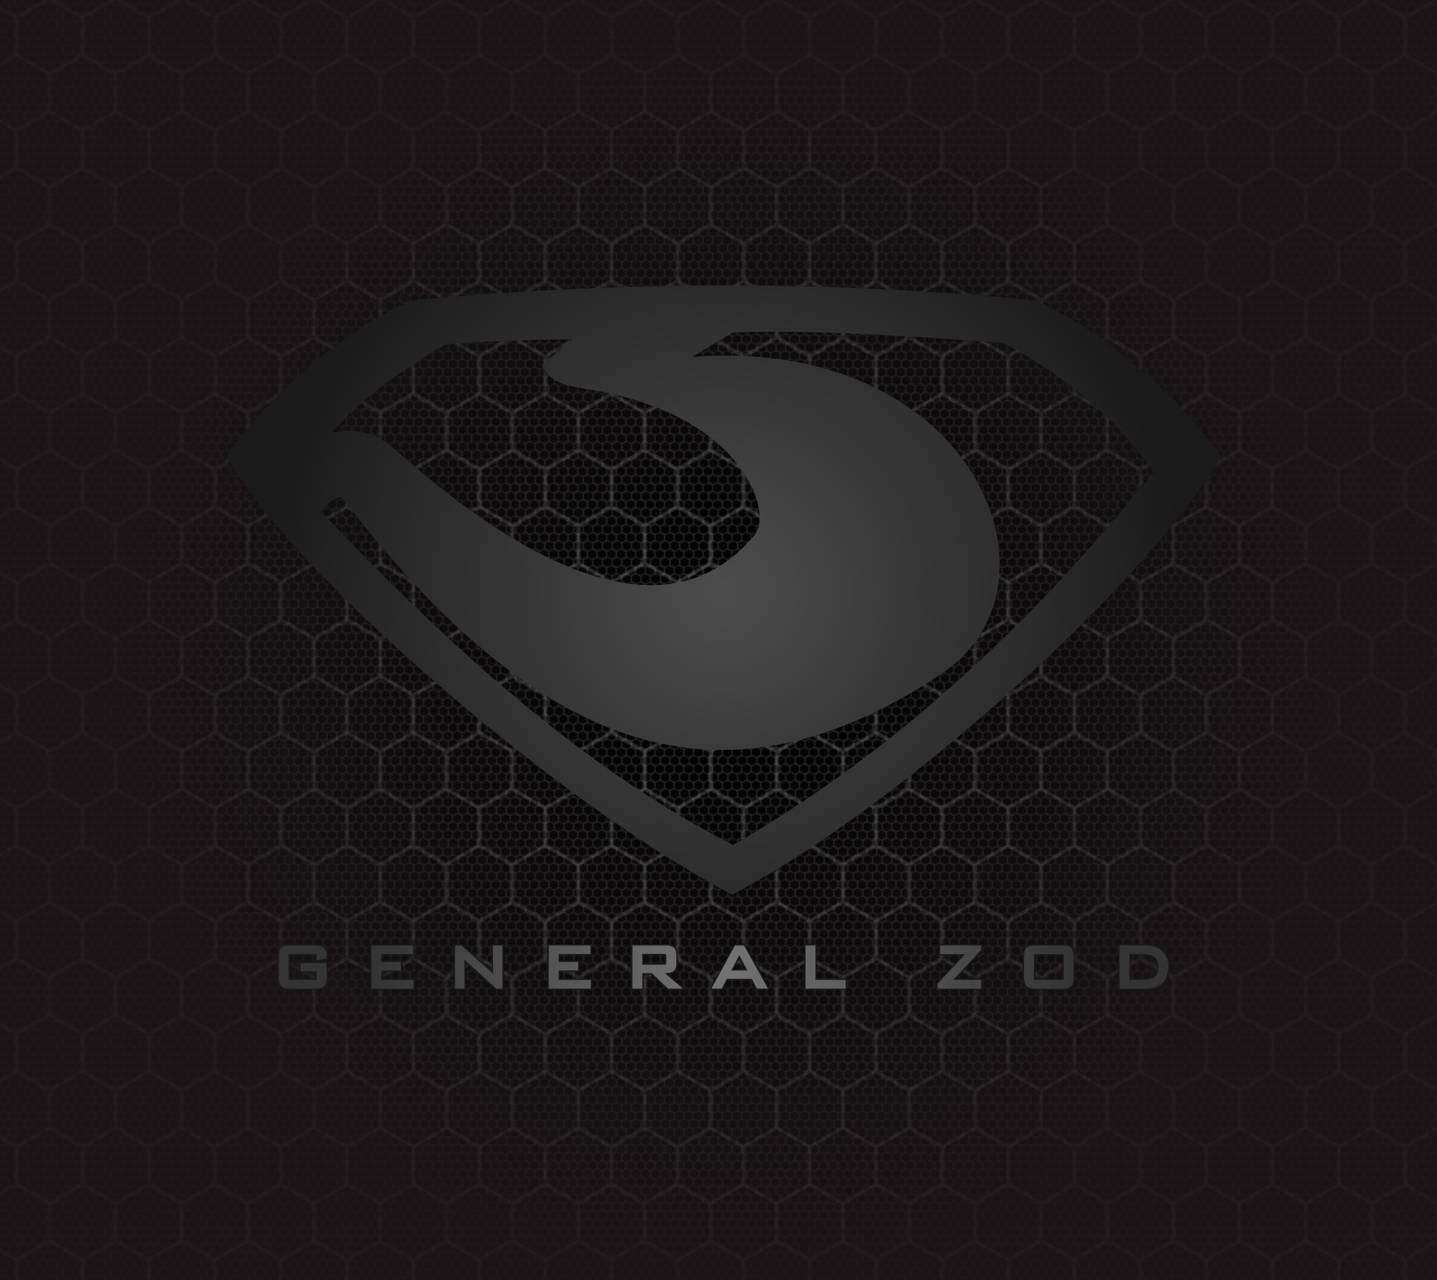 Zod Logo - general zod logo Wallpaper